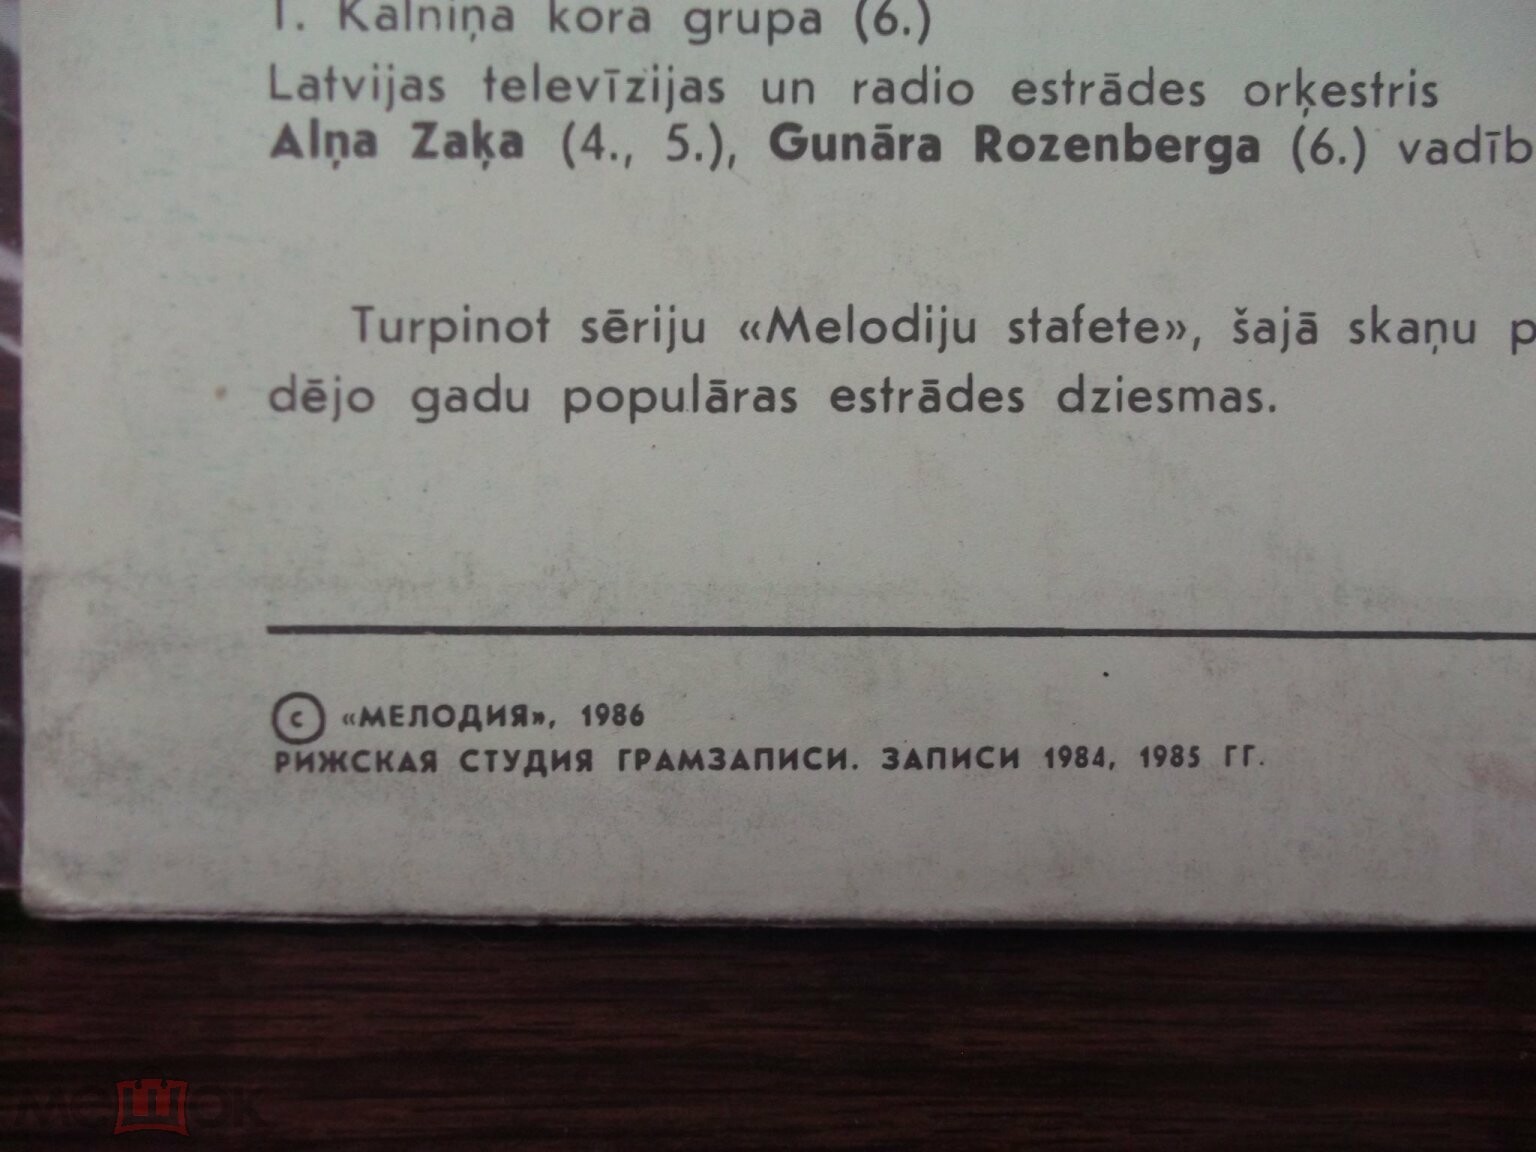 ЭСТАФЕТА МЕЛОДИЙ № 5 (MELODIJU STAFETE Nr. 5) - на латышском языке